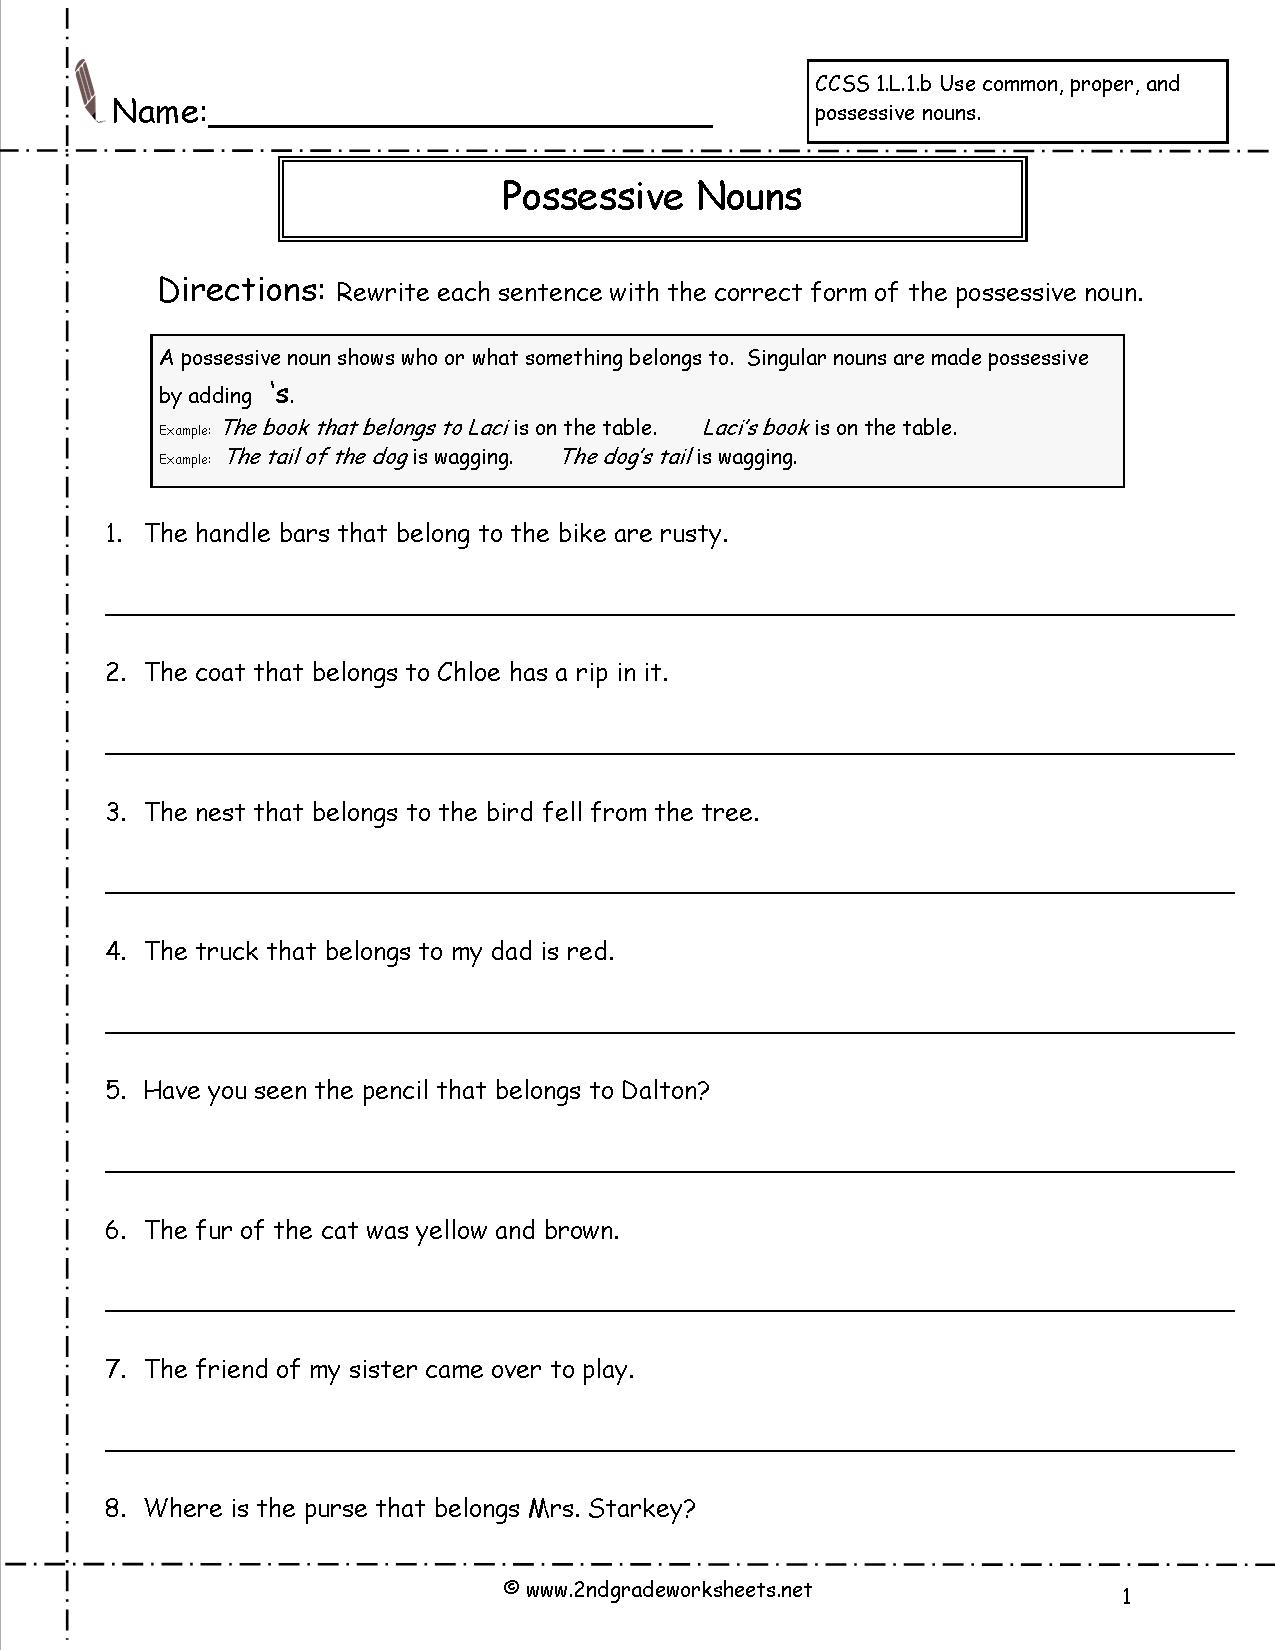 15-possessive-nouns-worksheets-5th-grade-worksheeto